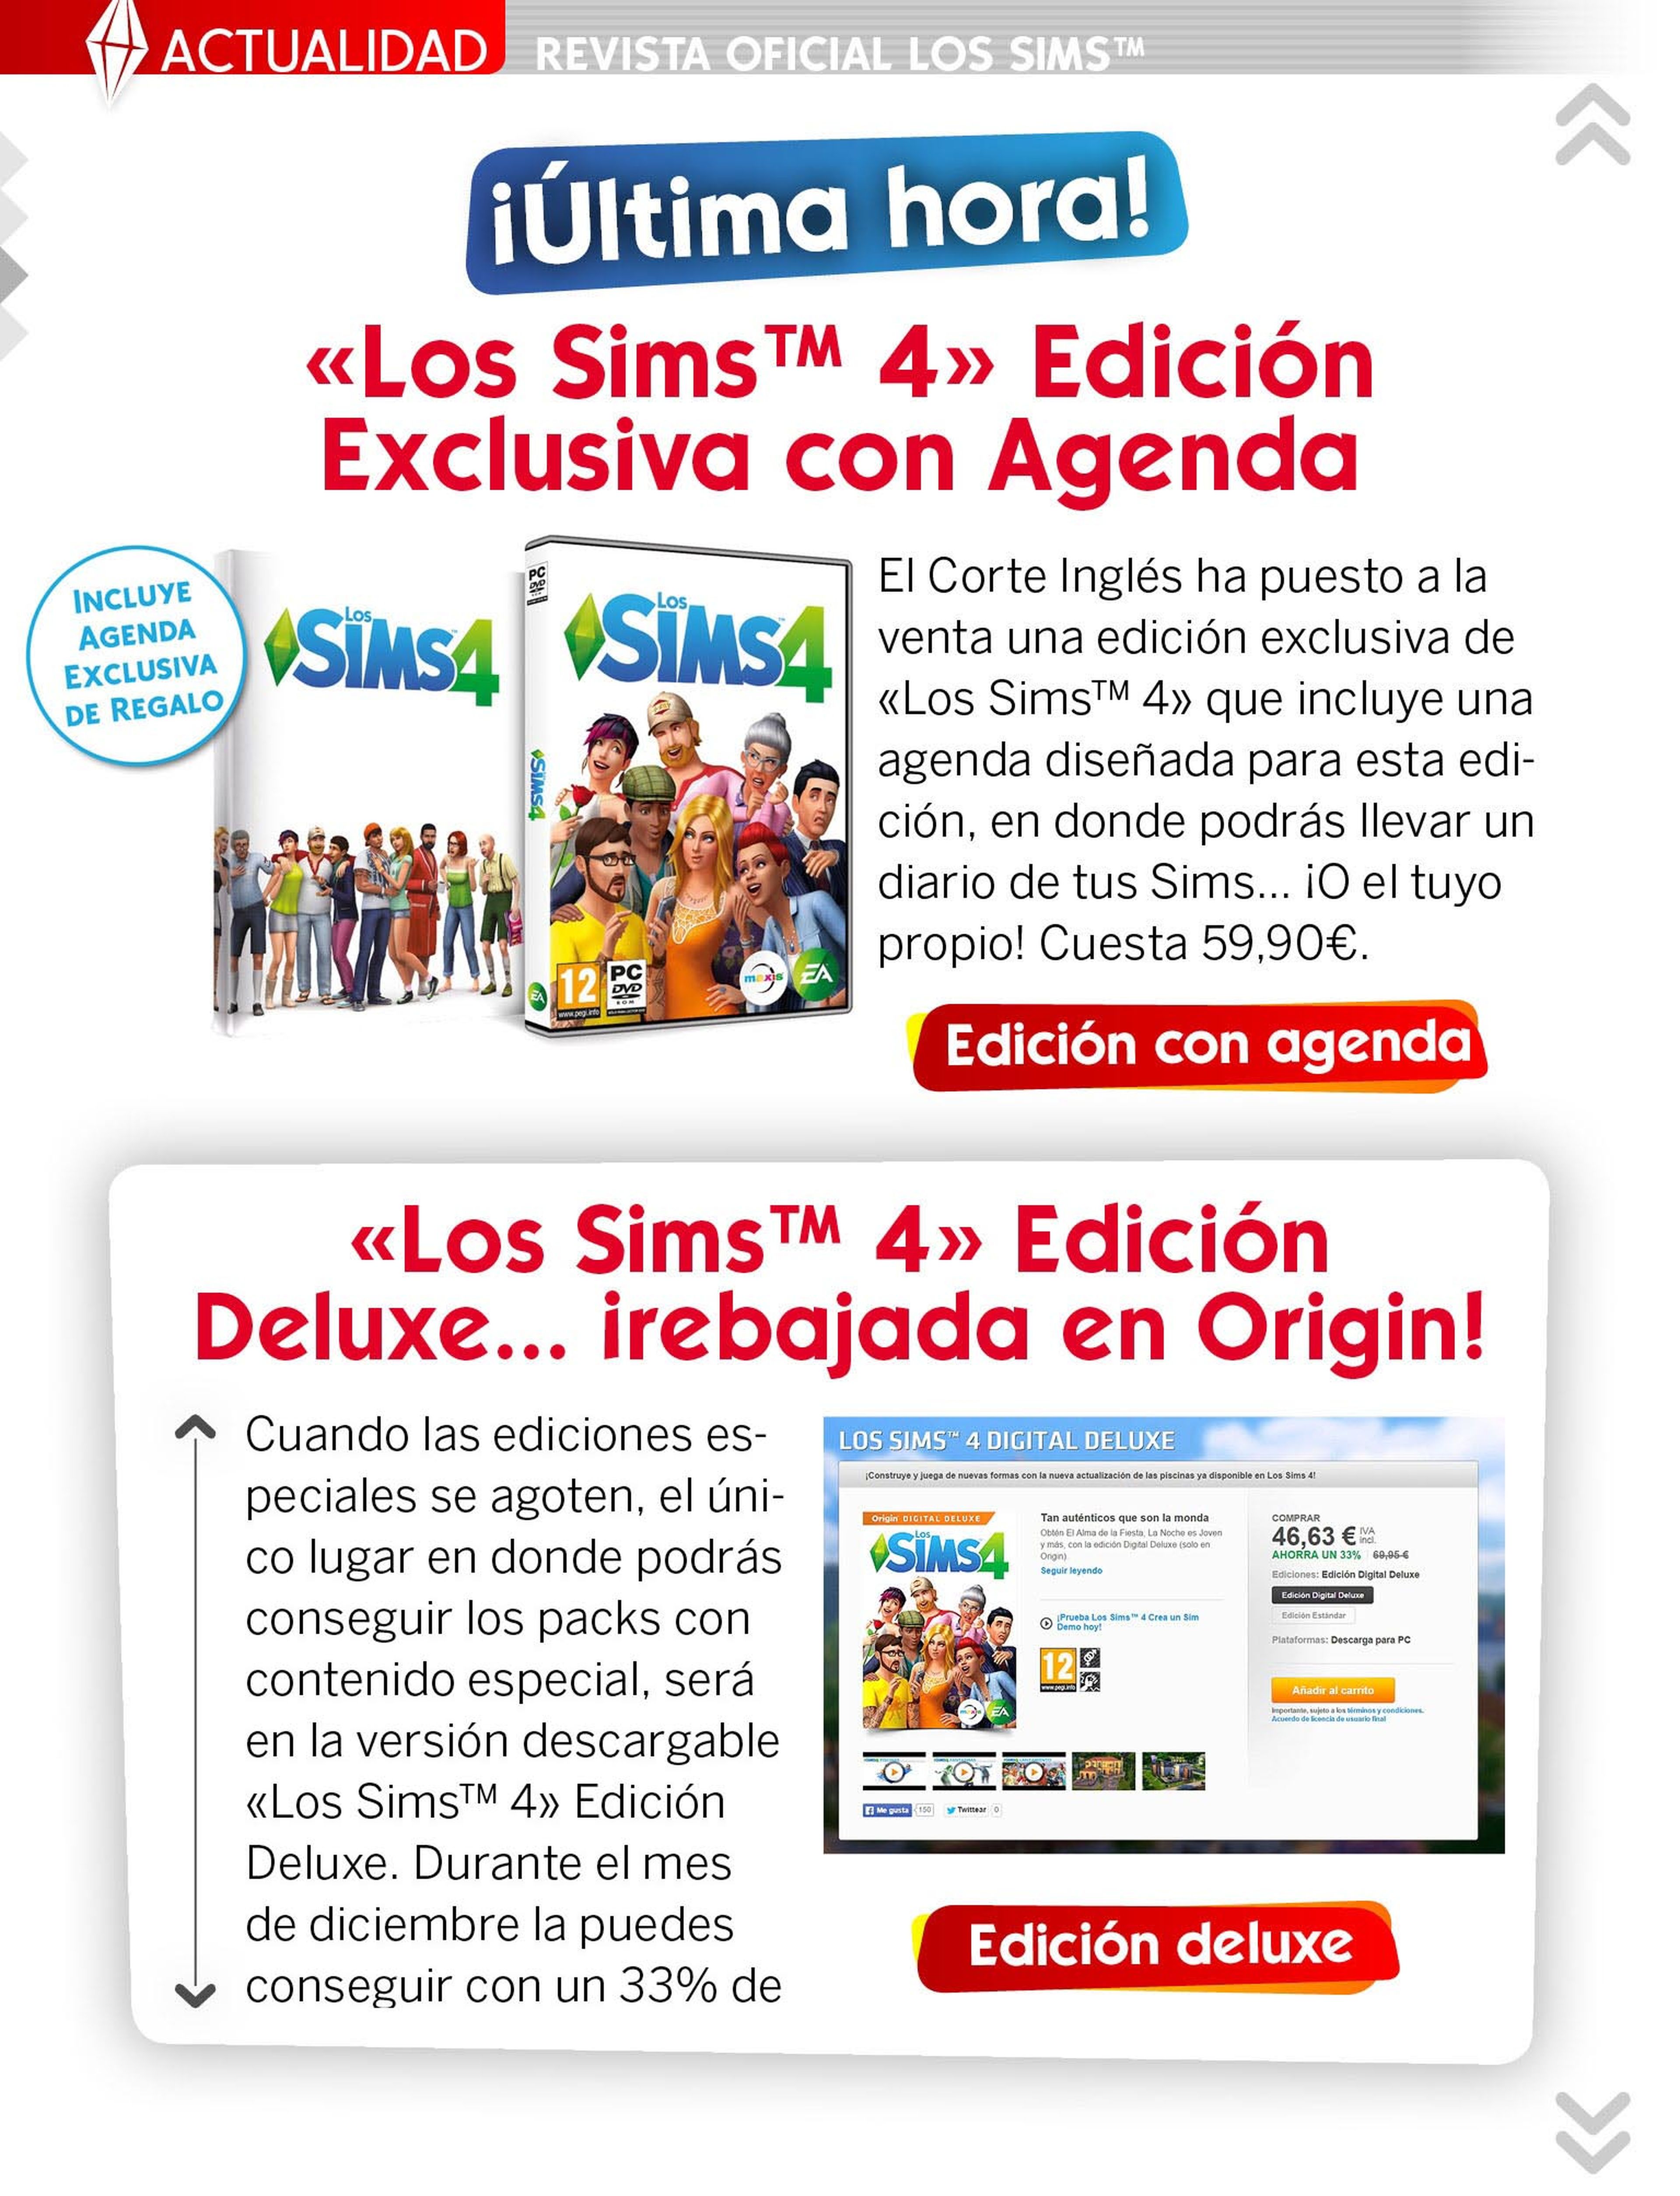 ¡Ya puedes descargar gratis el número 9 de La Revista Oficial de Los Sims!